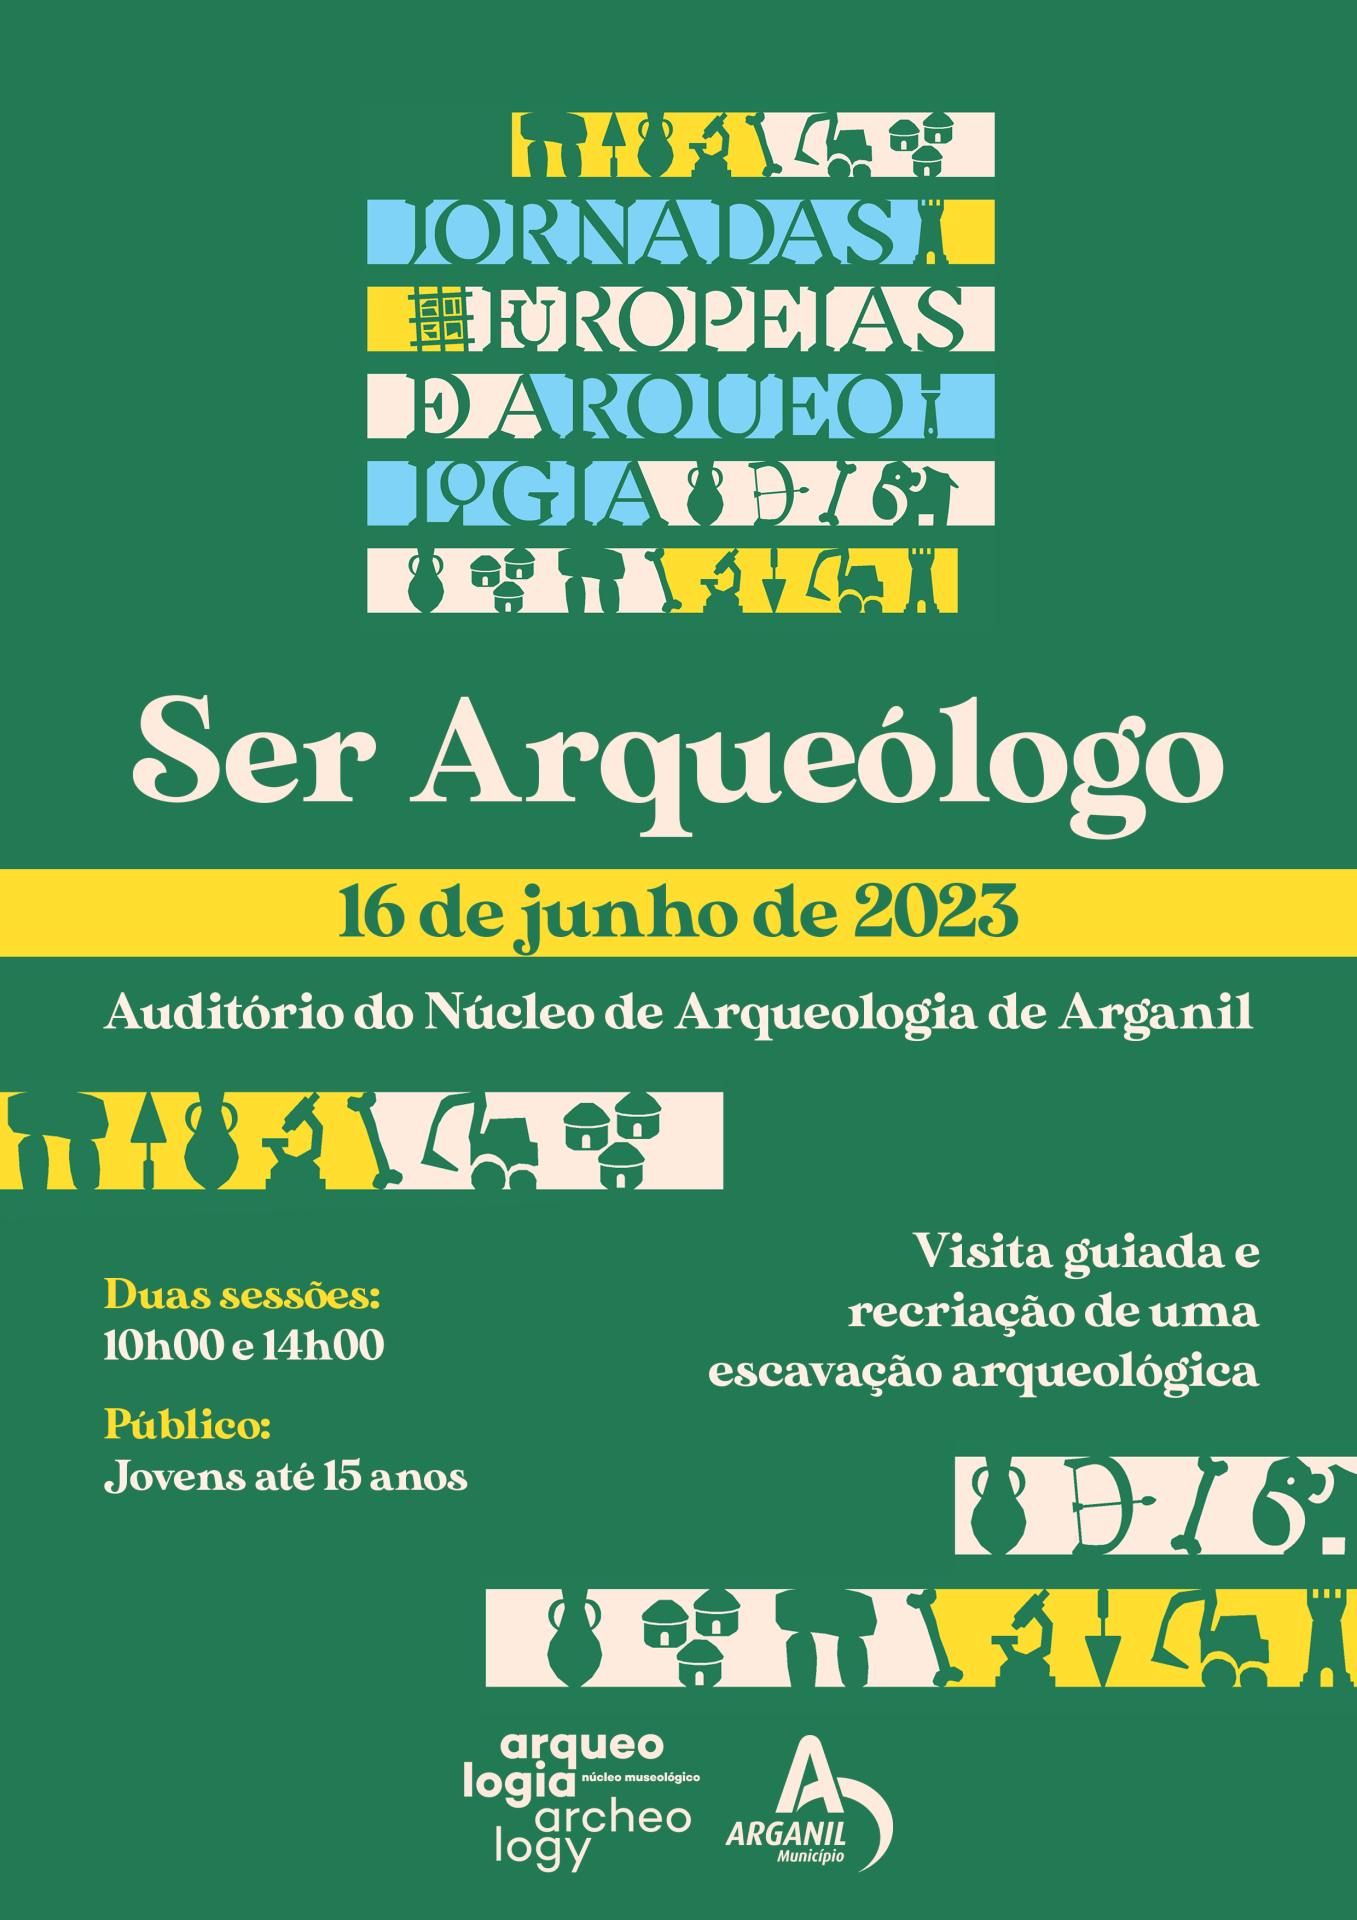 Jornadas Europeias De Arqueologia 2023